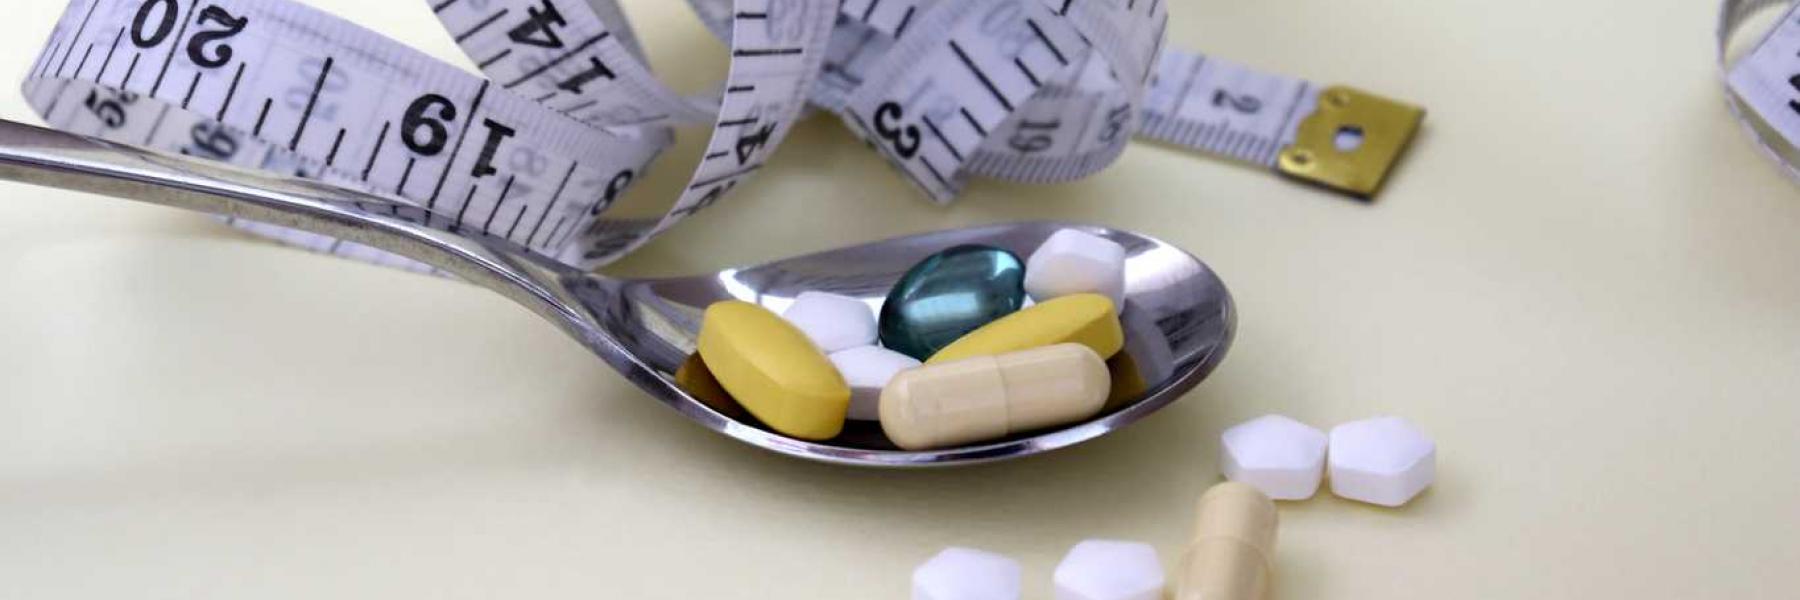 التجارب السريرية الأخيرة تظهر فاعلية دواء للسكري في إنقاص الوزن